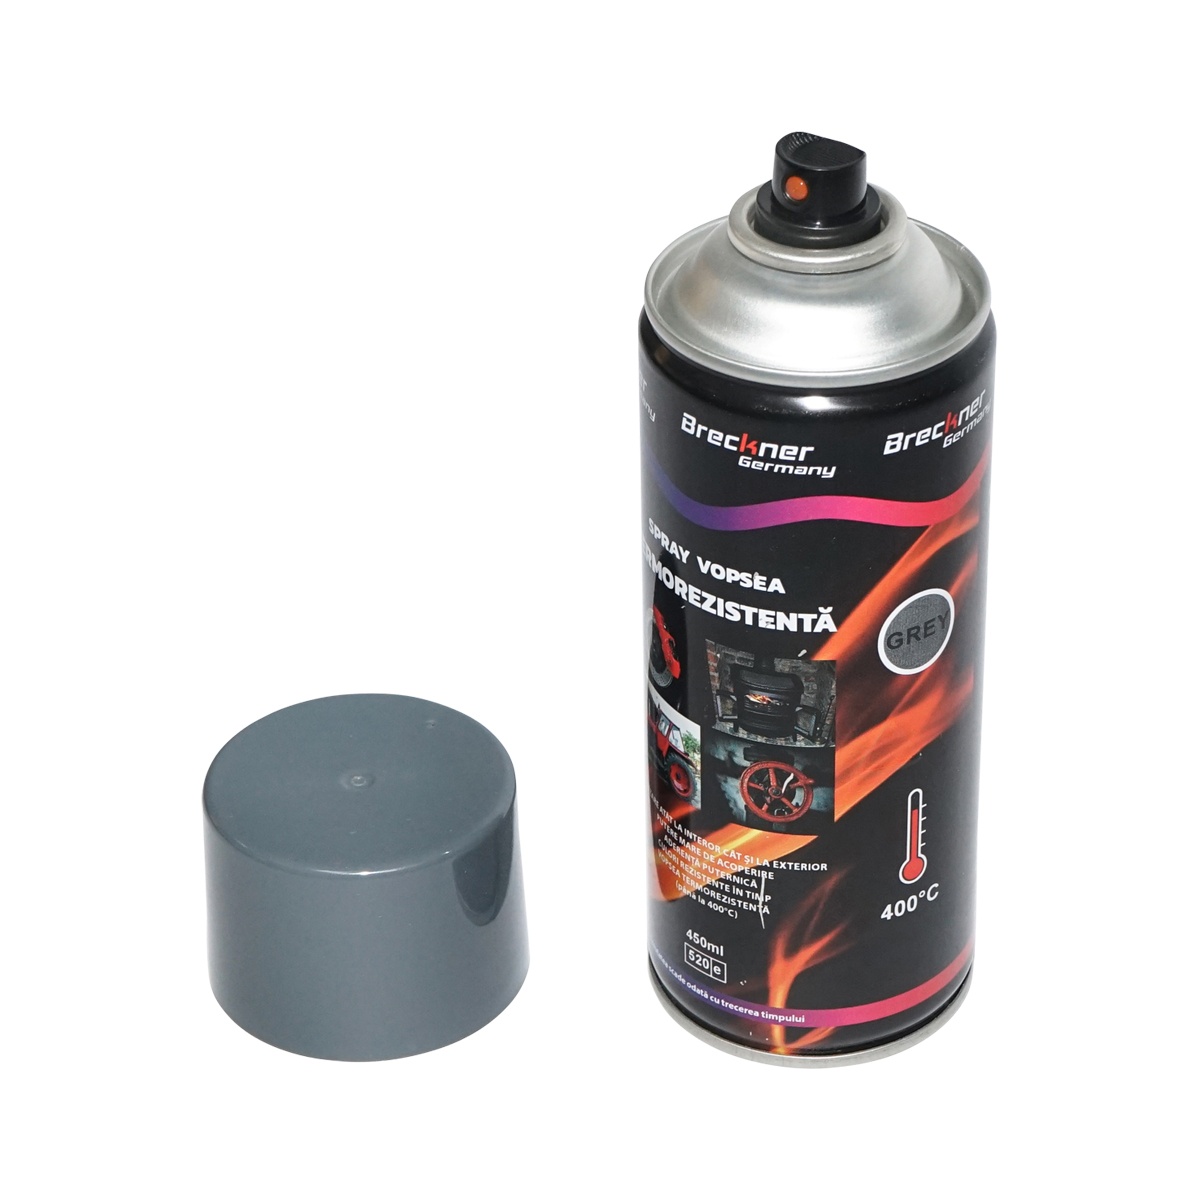 Spray vopsea acrilic termorezistent la 400 grade, gri, 450ml, Breckner Germany